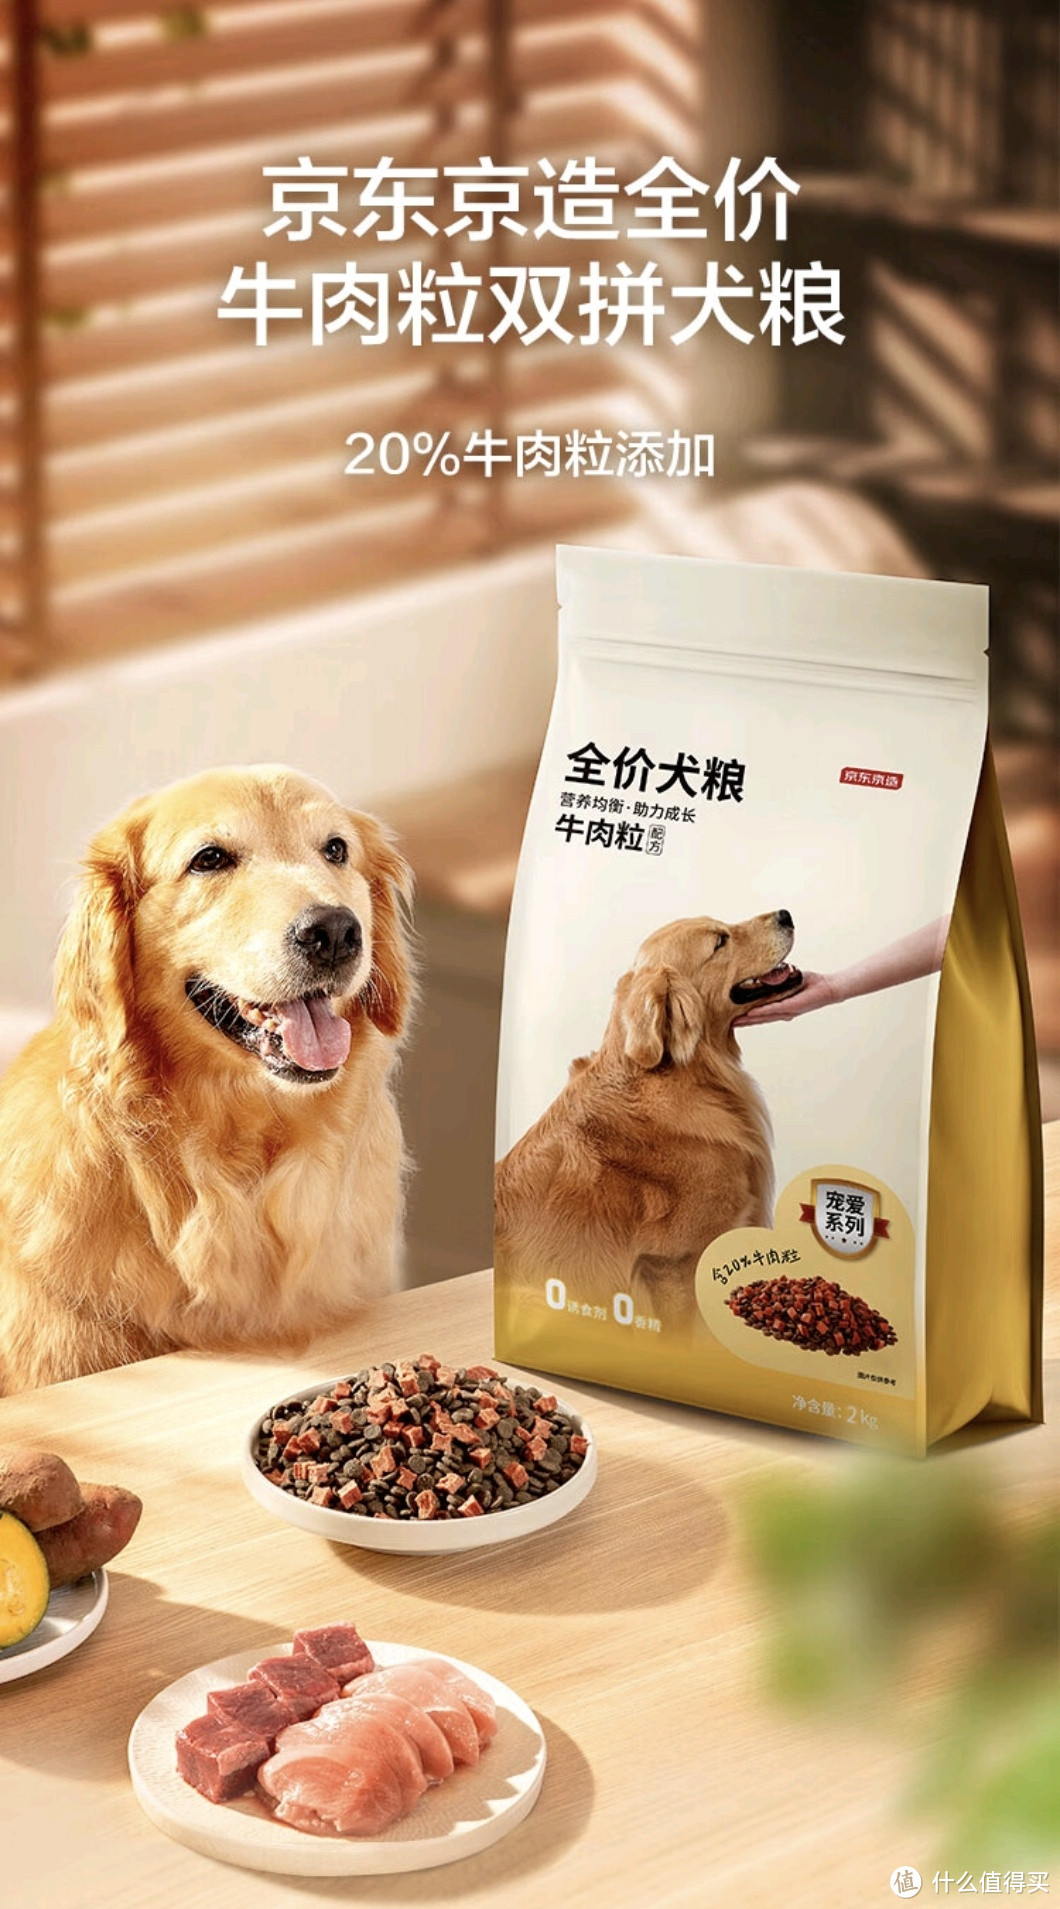 京东京造的狗粮也很不错哦，家里养狗的可以看看这两款